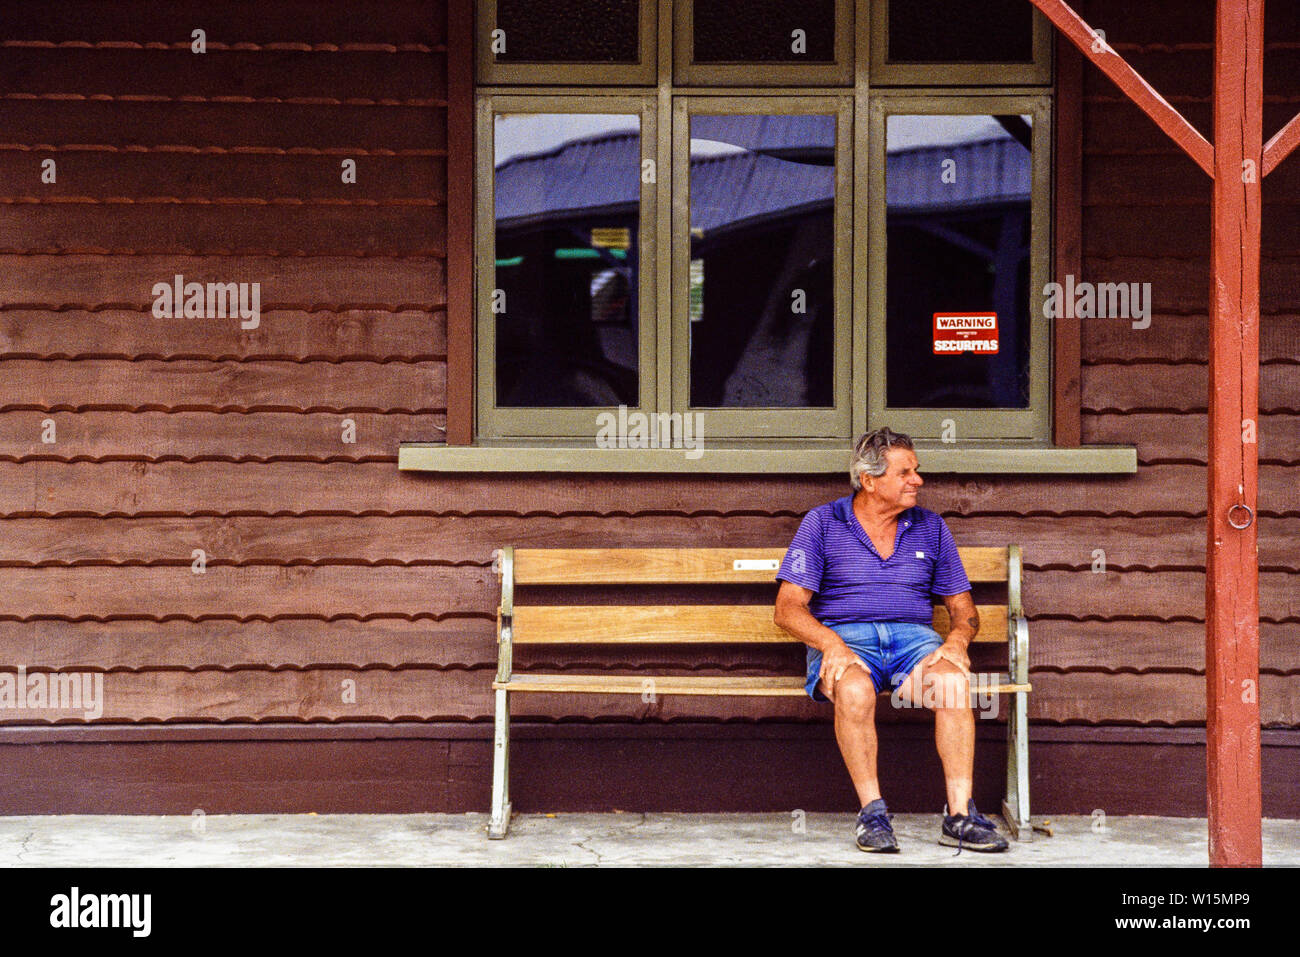 Nouvelle Zélande, île du Sud, Arrowtown. Un touriste prend un reste assis sur un banc. Historique d'une ville minière de l'or dans la région de l'Otago. Photo prise Novembre Banque D'Images